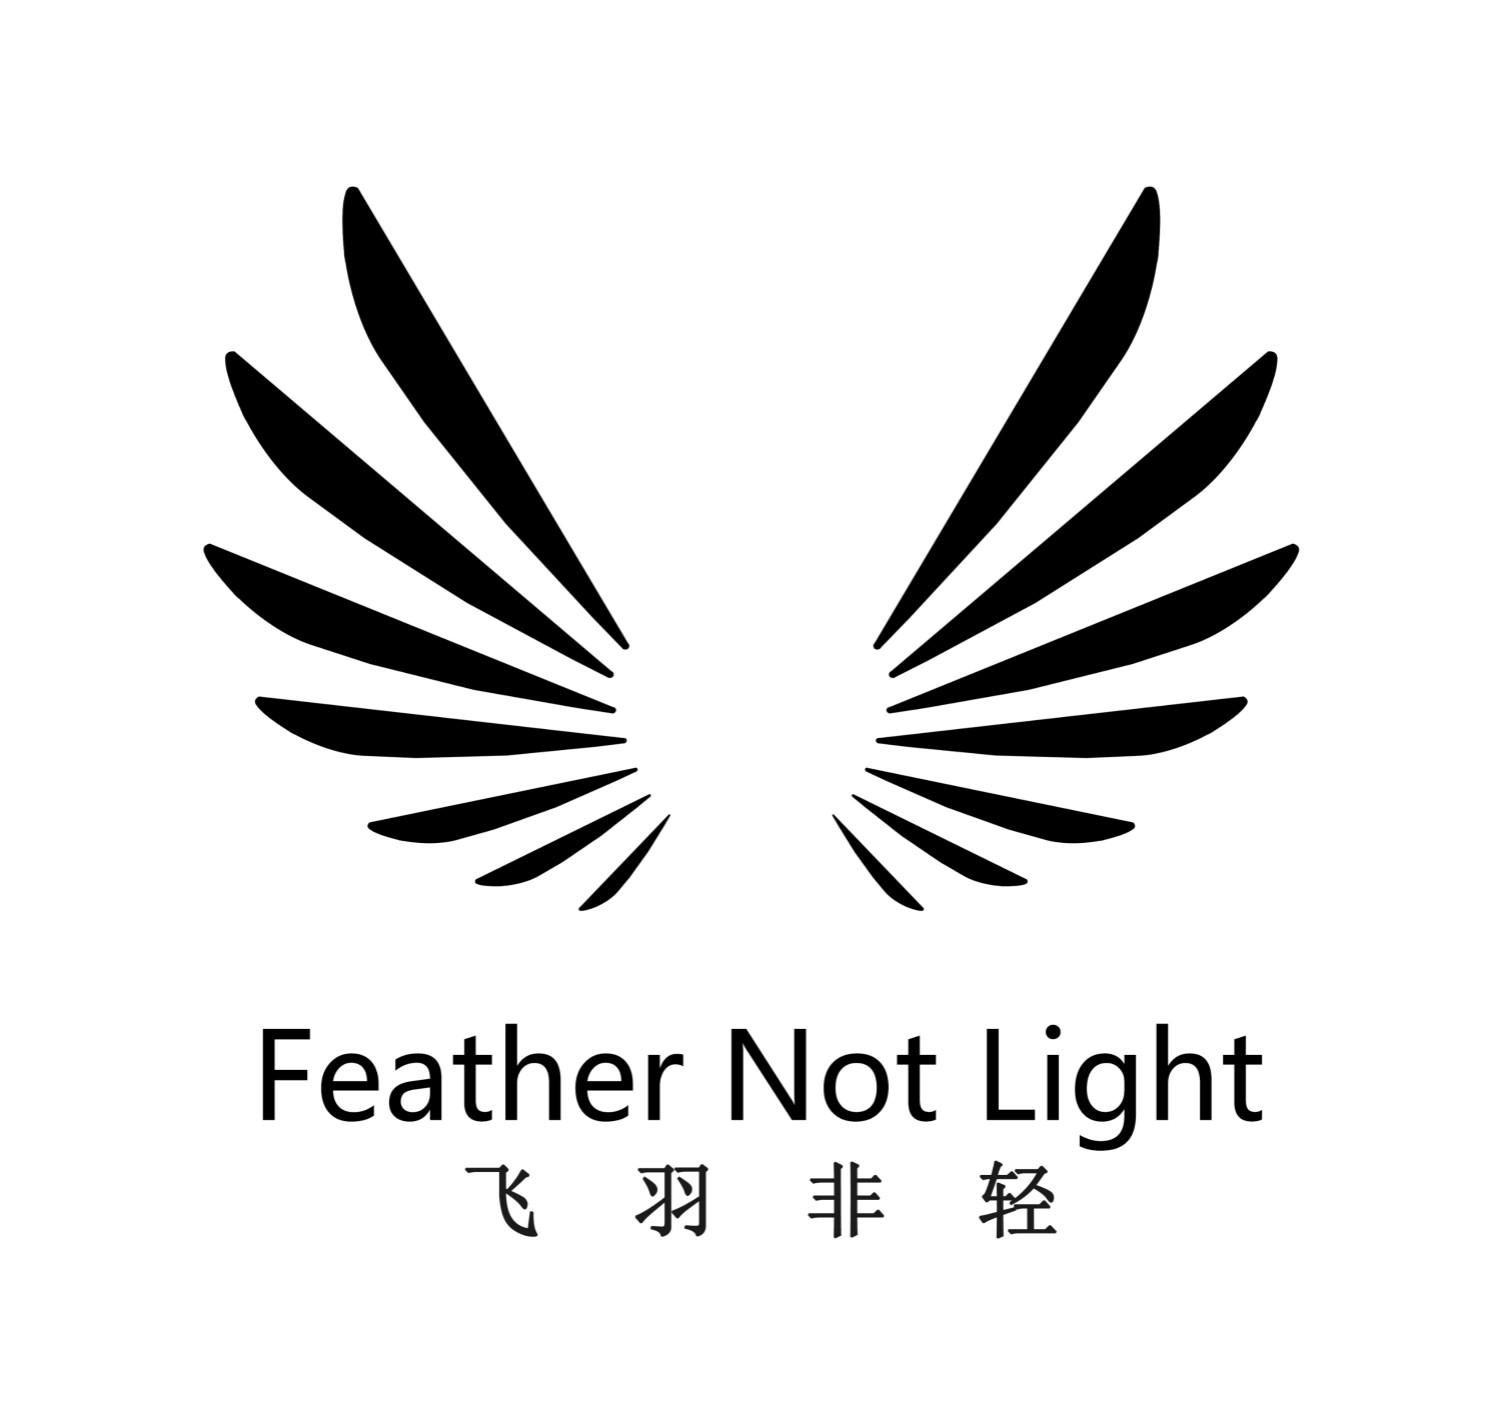  em>飞羽 /em>非 em>轻 /em> feather not light